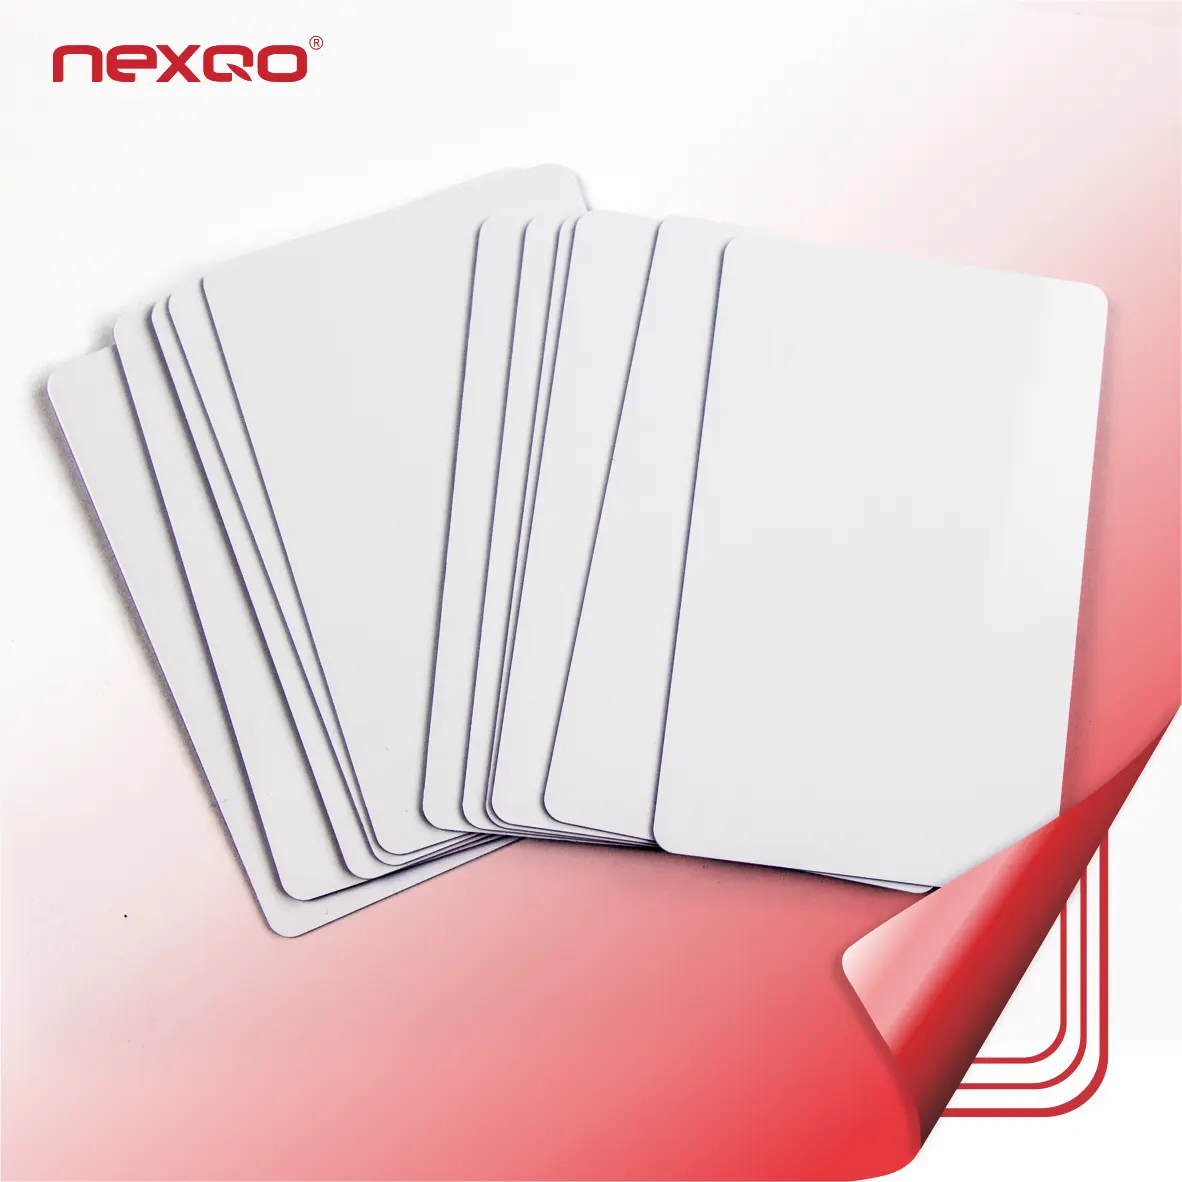 Tarjeta de Crédito de PVC blanca y plástica, tamaño de tarjeta de crédito con Chip F08 para Control de acceso, tarjeta RFID